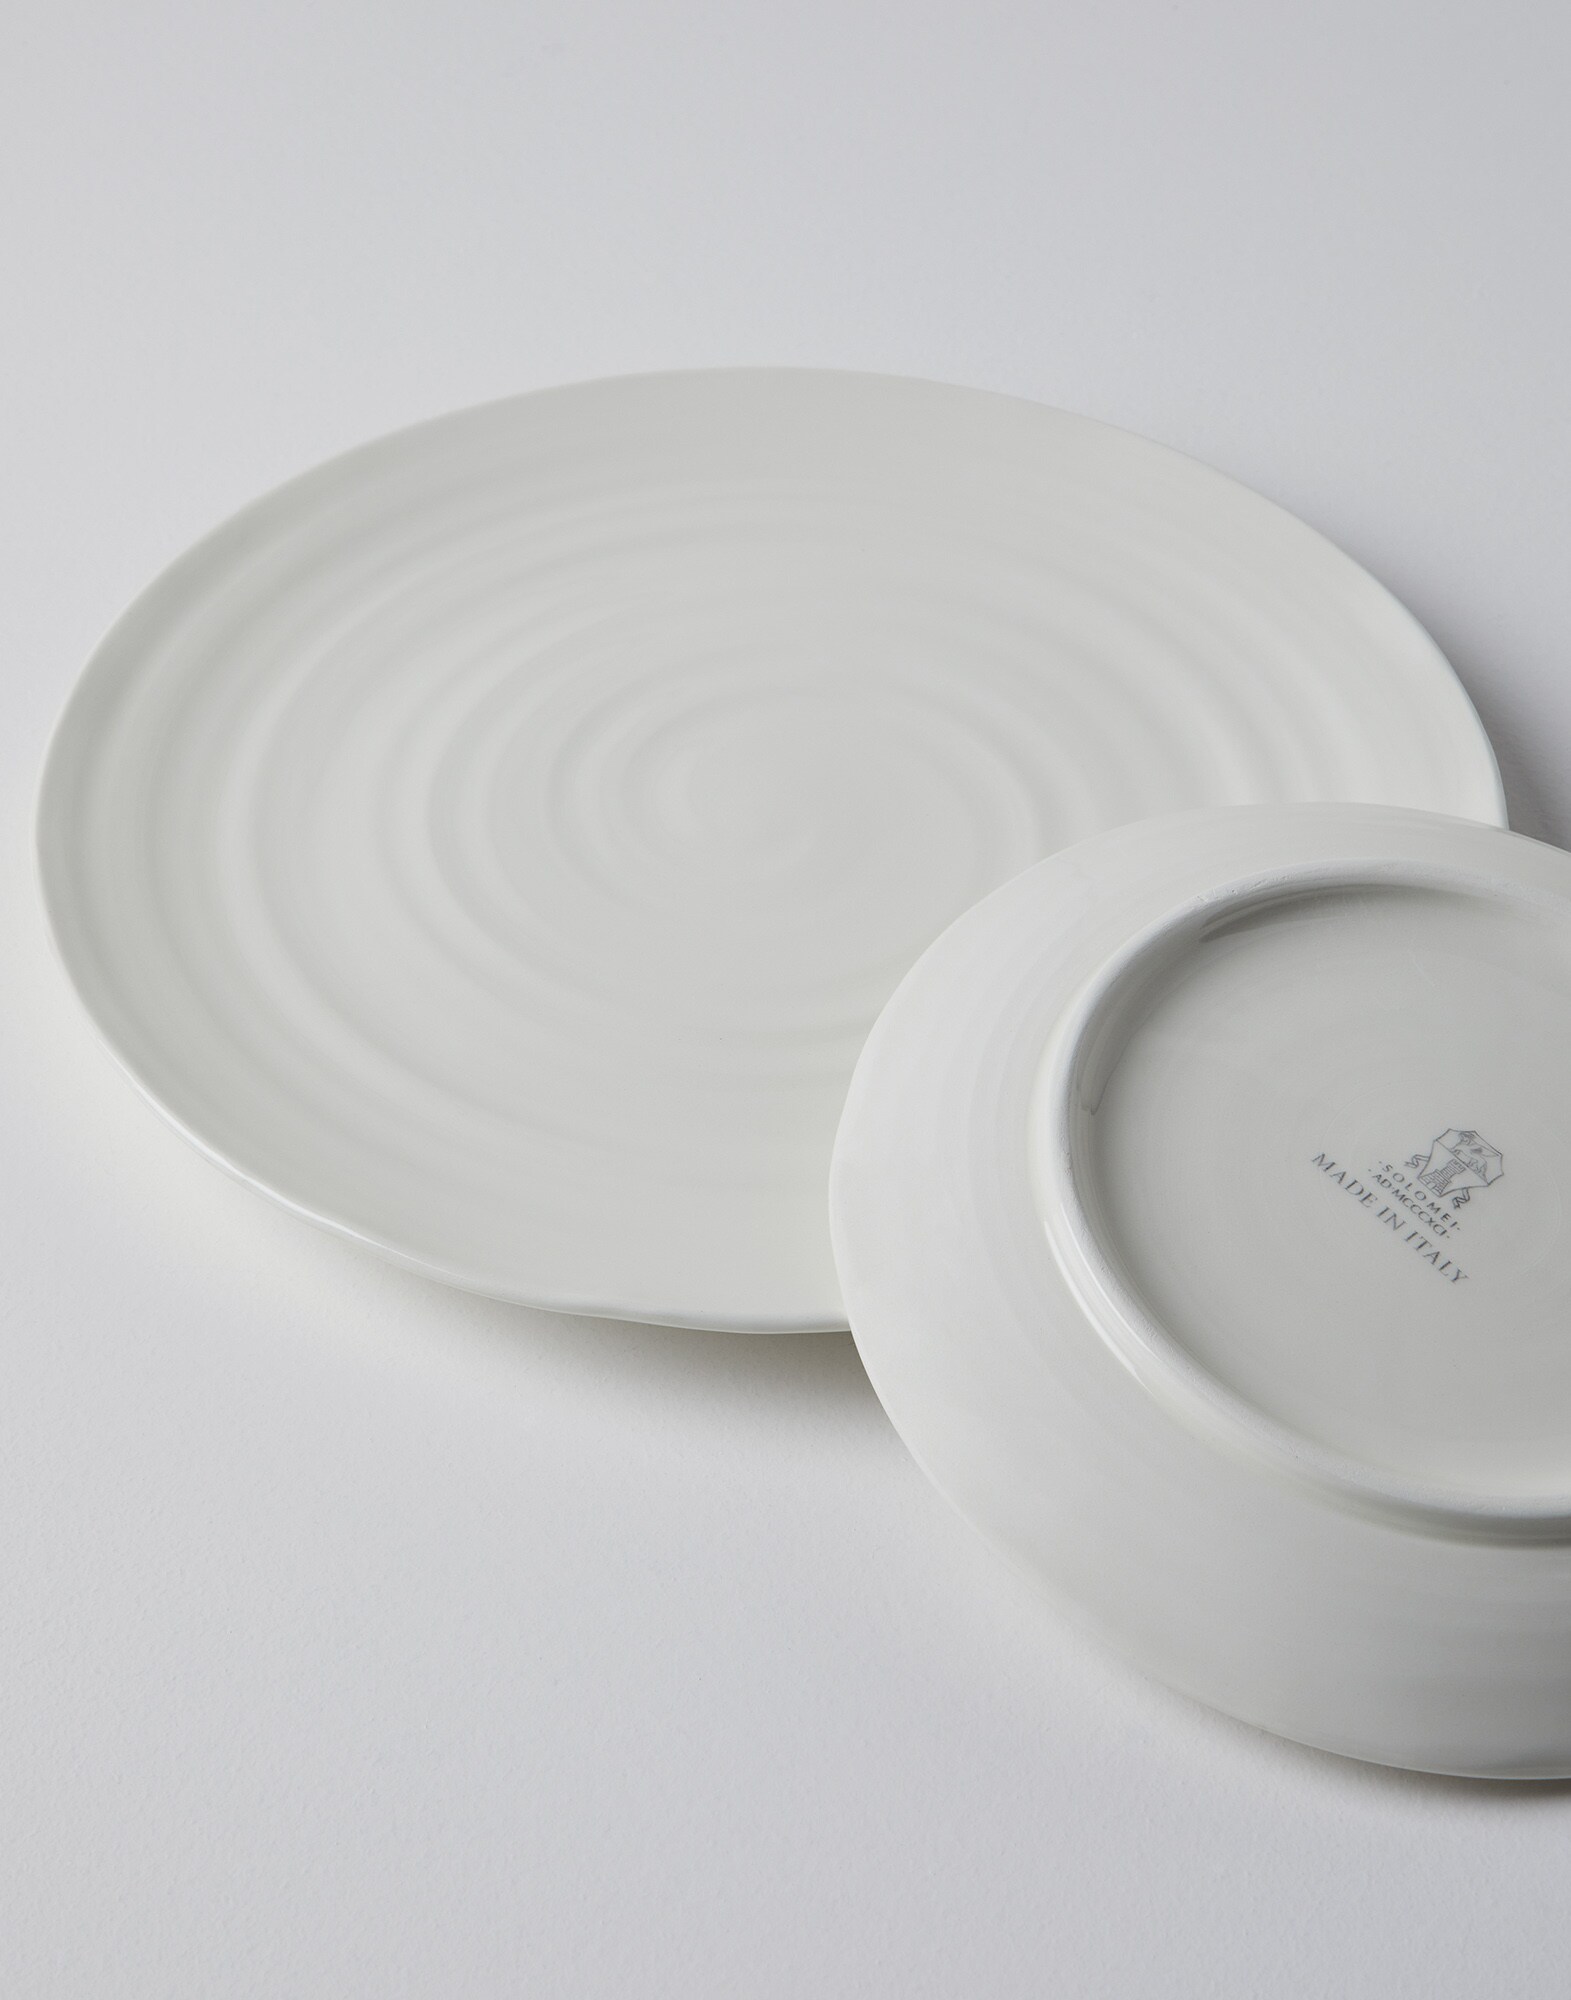 传统陶瓷餐盘
                            乳白 生活风格 - Brunello Cucinelli
                        